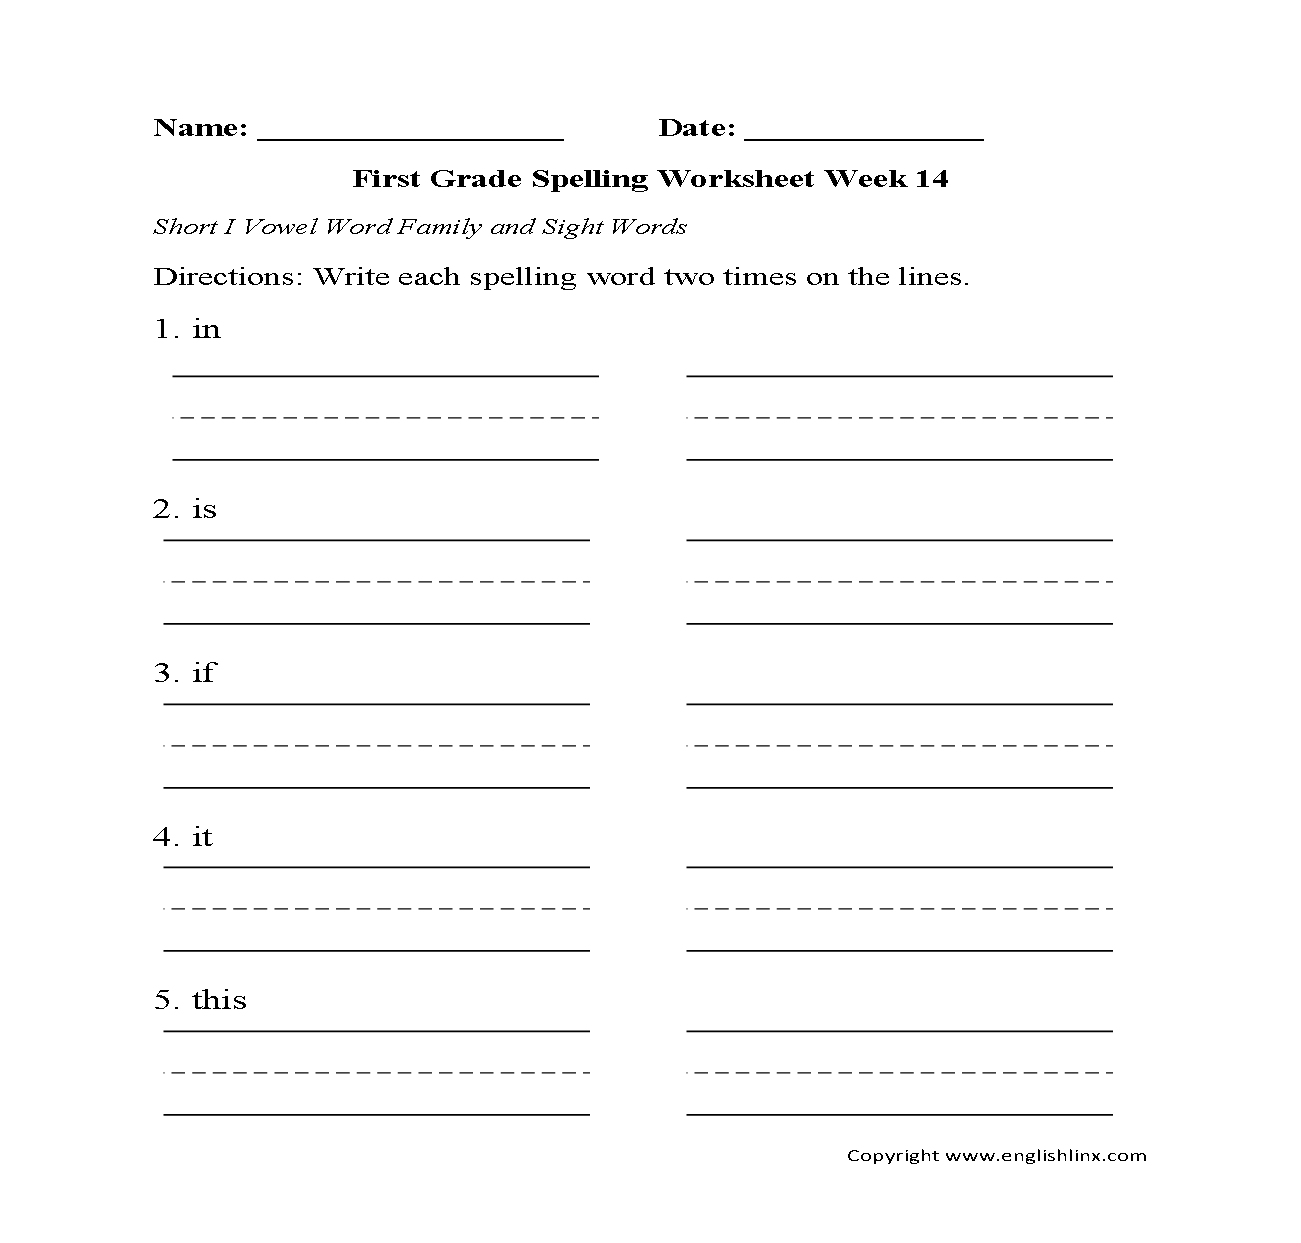 Week 14 Short I Vowel First Grade Spelling Worksheets